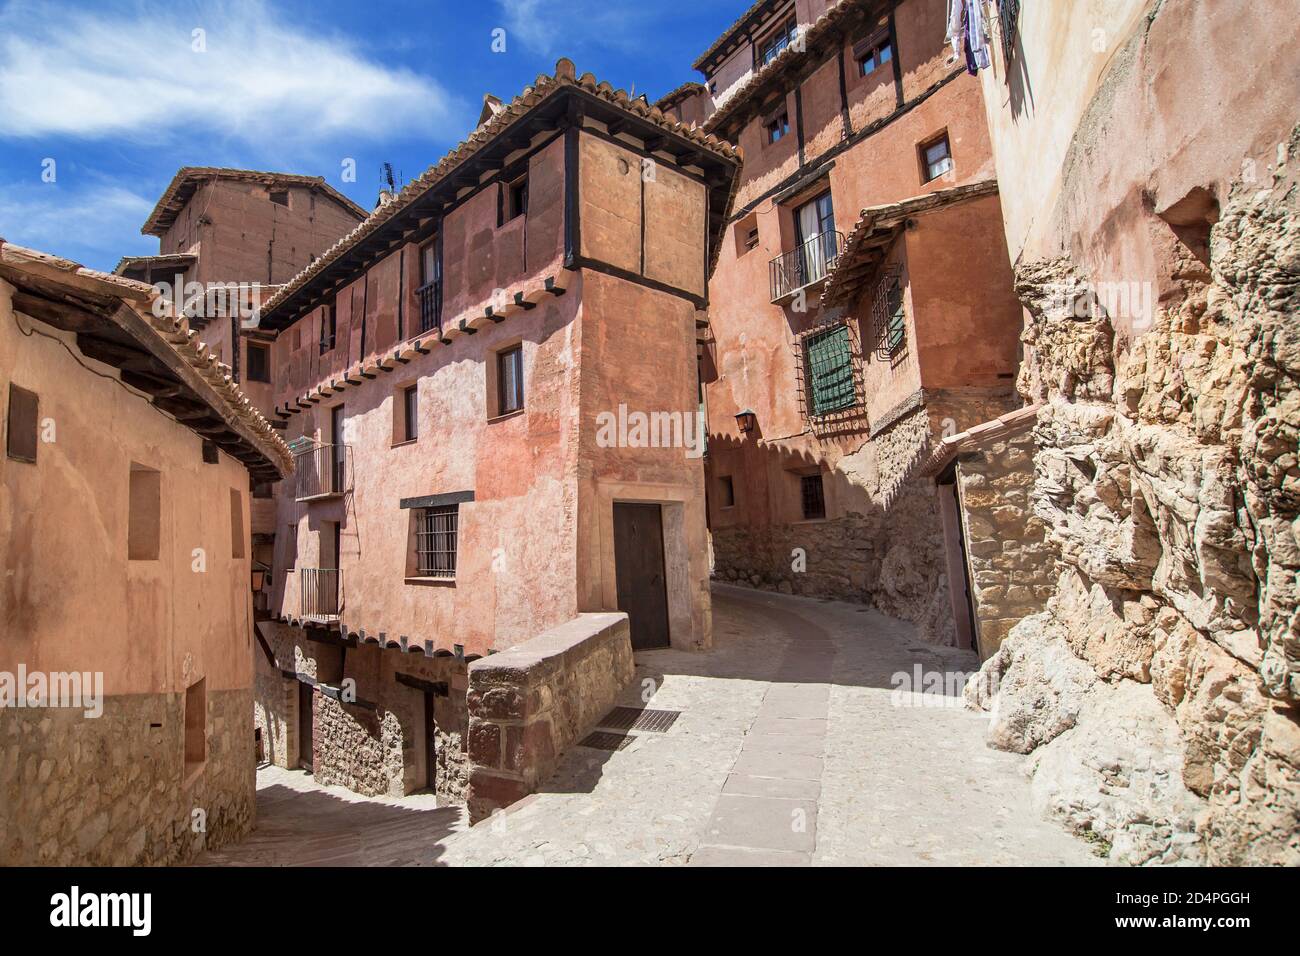 Intersection of alleys in Albarracin, Teruel, Spain. Stock Photo